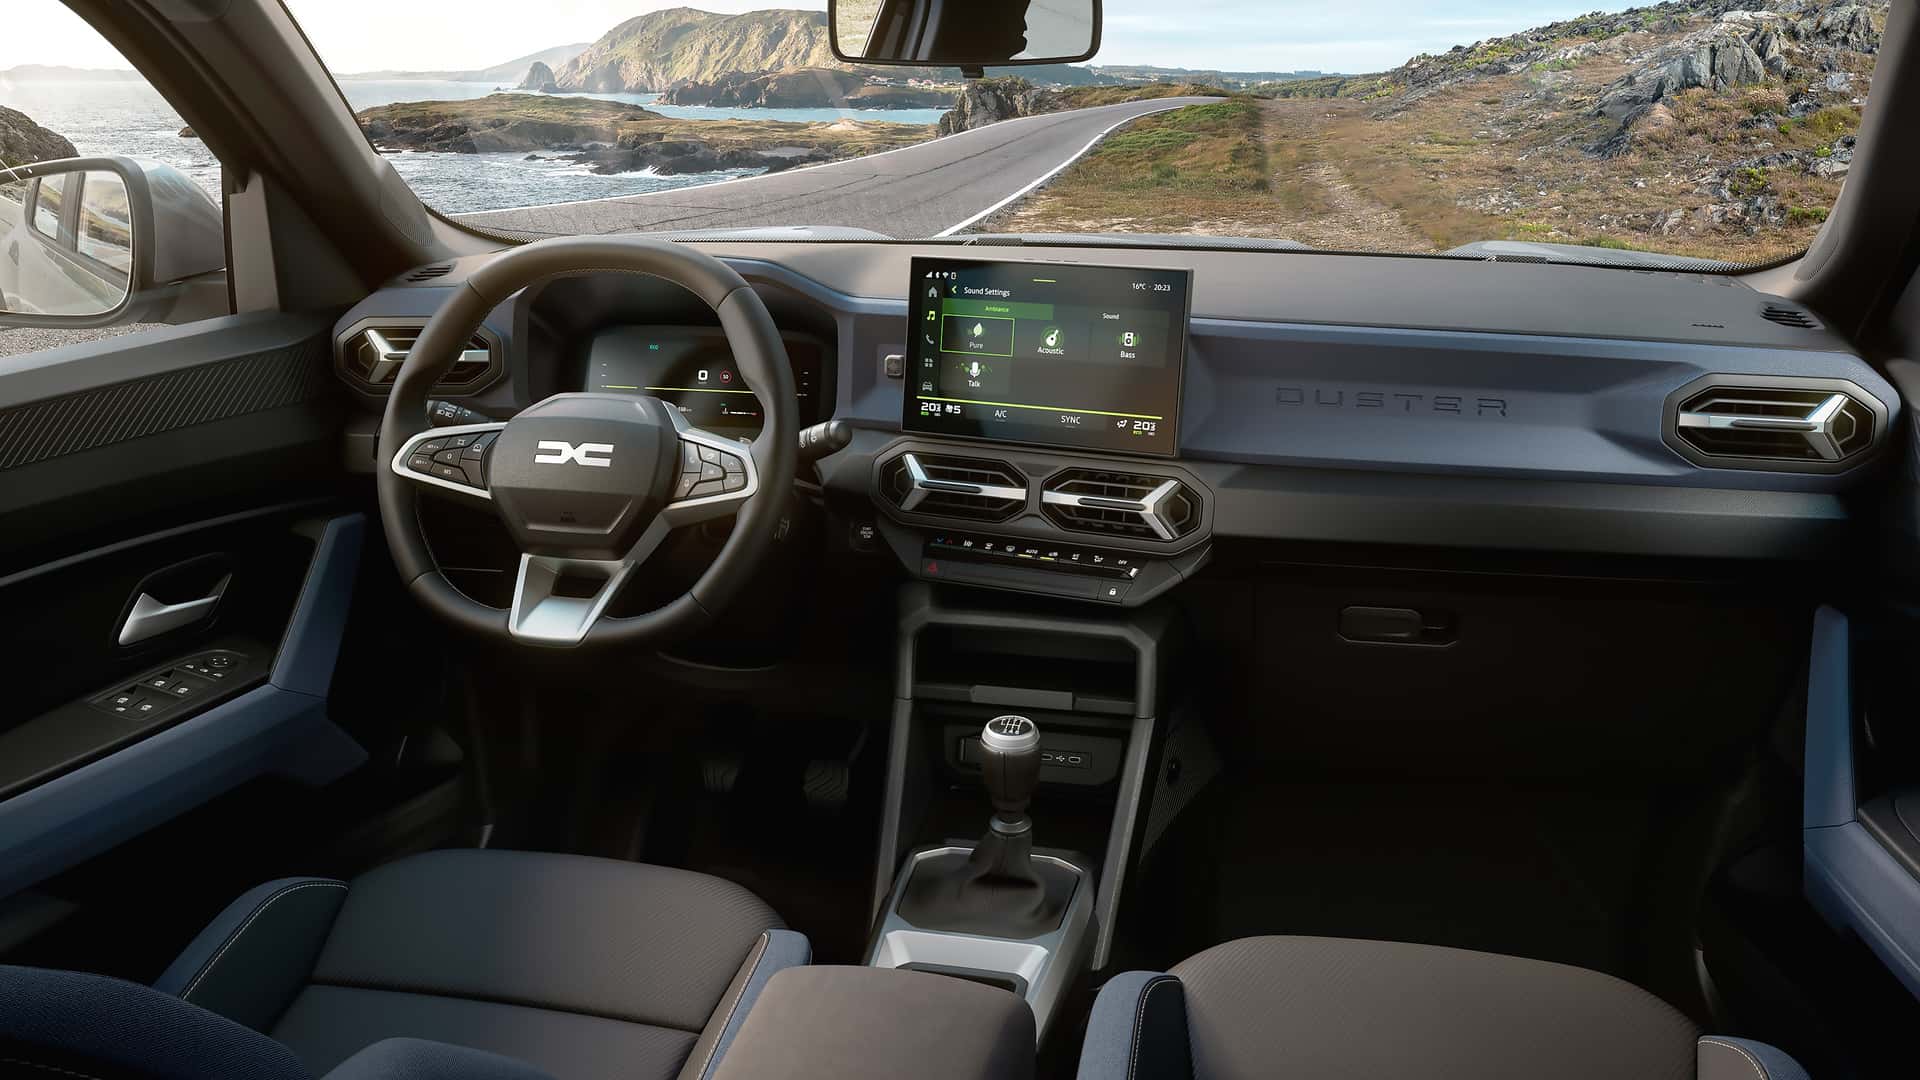 Dacia показала Duster третьего поколения: новый дизайн и гибридная технология